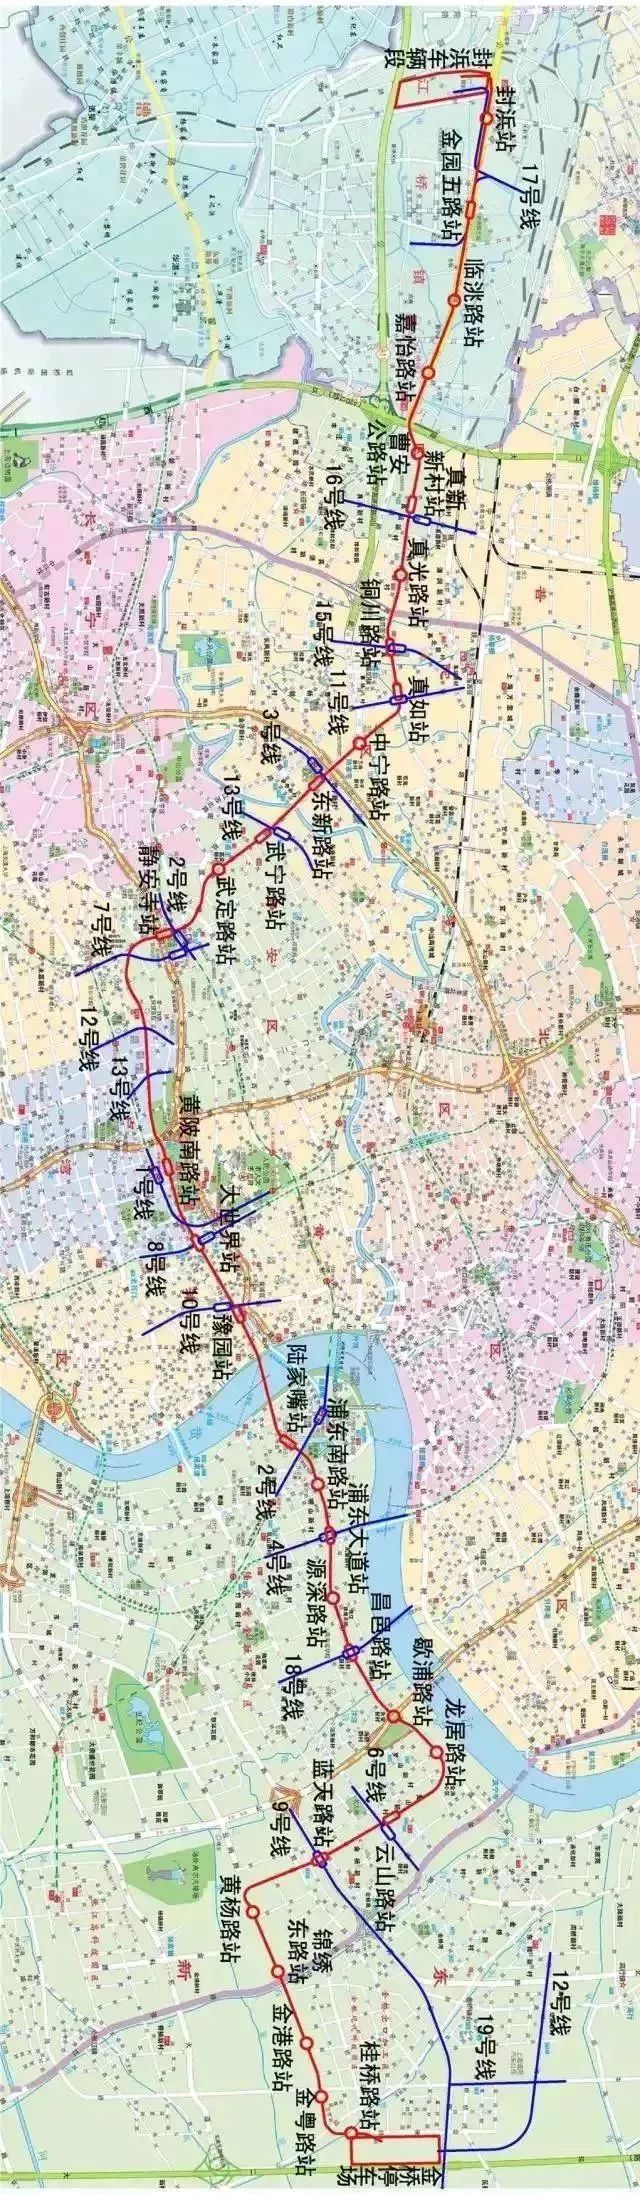 去年8月,上海申铁投资有限公司发布了 对轨道交通嘉闵线和机场联络线